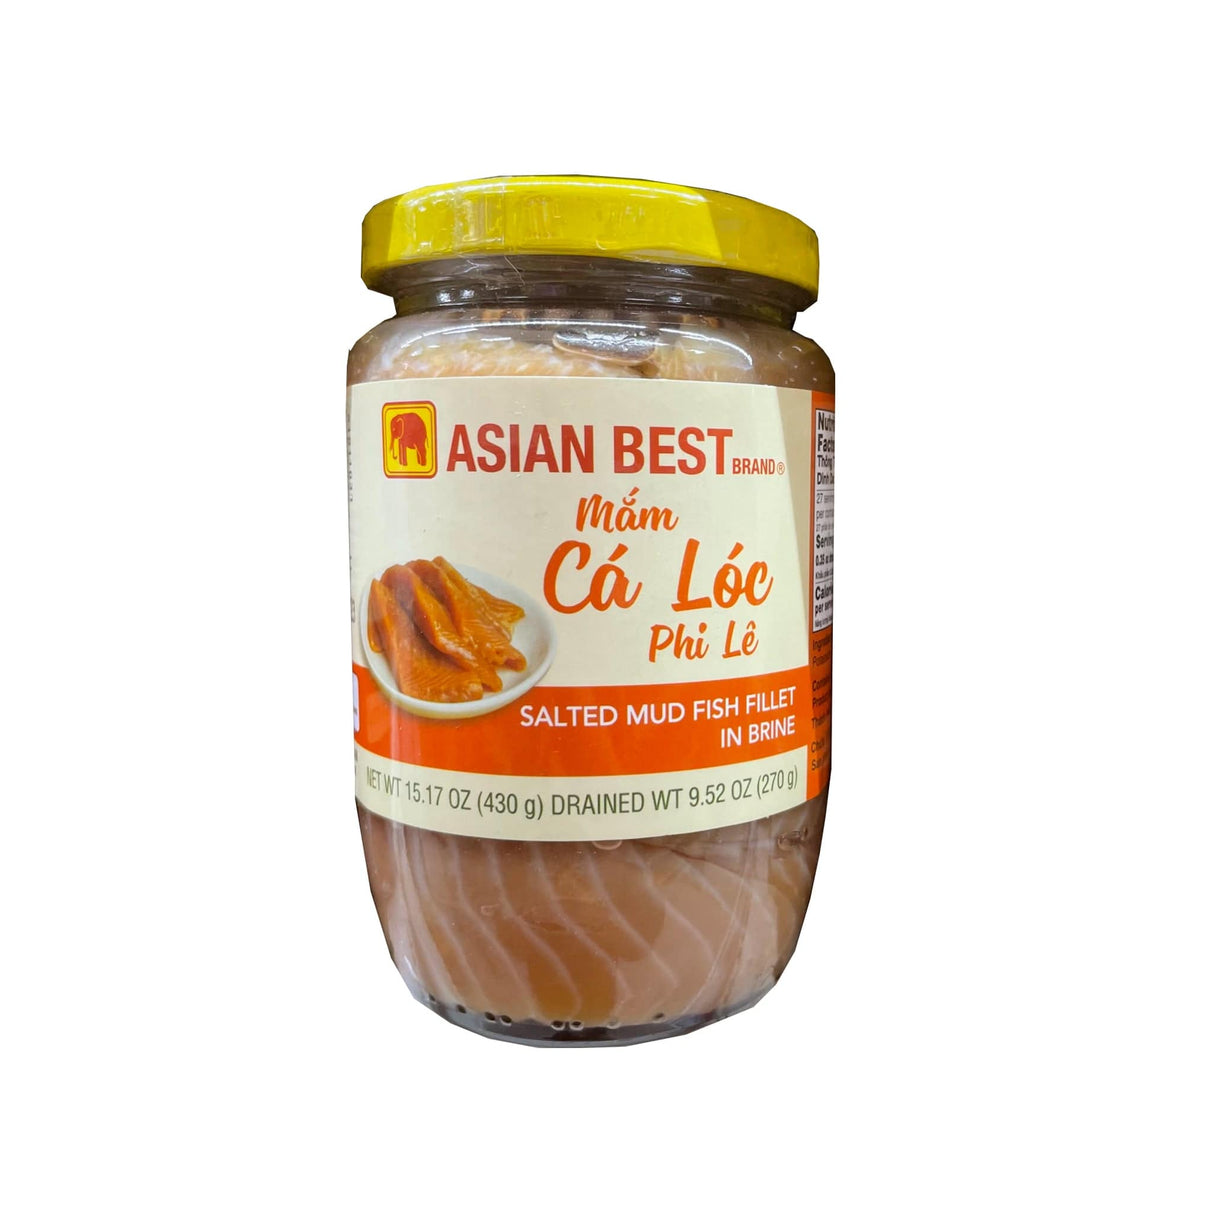 Asian Best Brand Salted Mud Fish Fillet in Brine (Mam Ca Loc Phi Le)